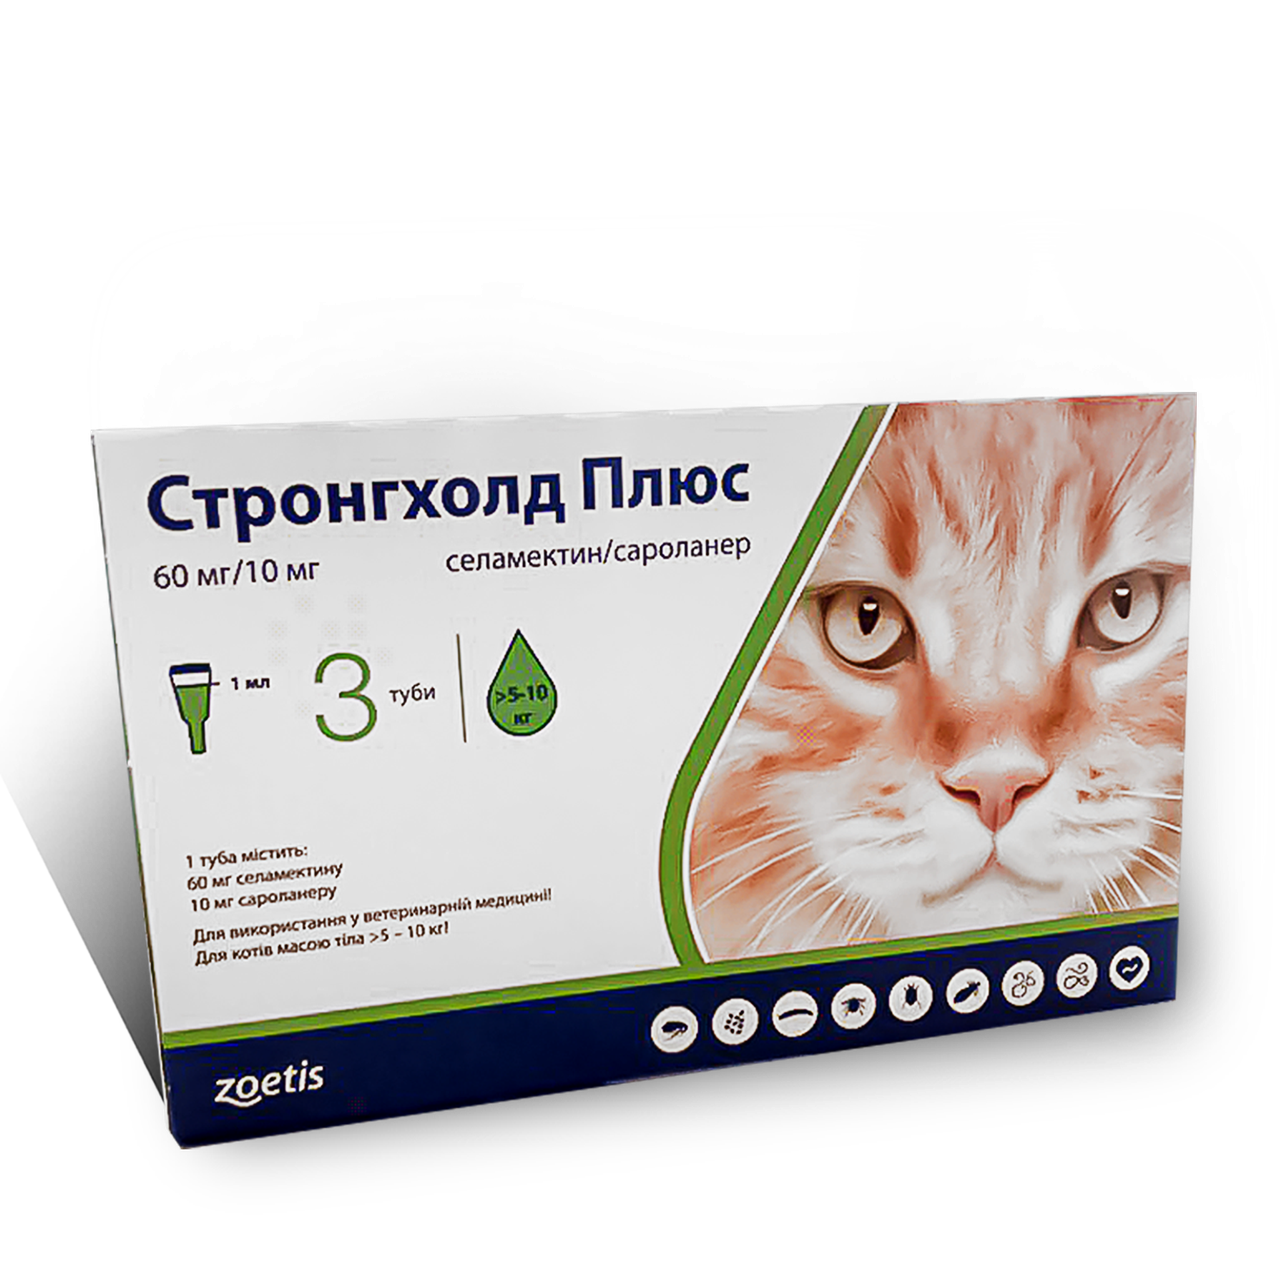 

Капли Stronghold Стронгхолд Плюс 60 мг для кошек 5-10 кг, 1 мл х 3 пипетки для борьбы и профилактики паразитов